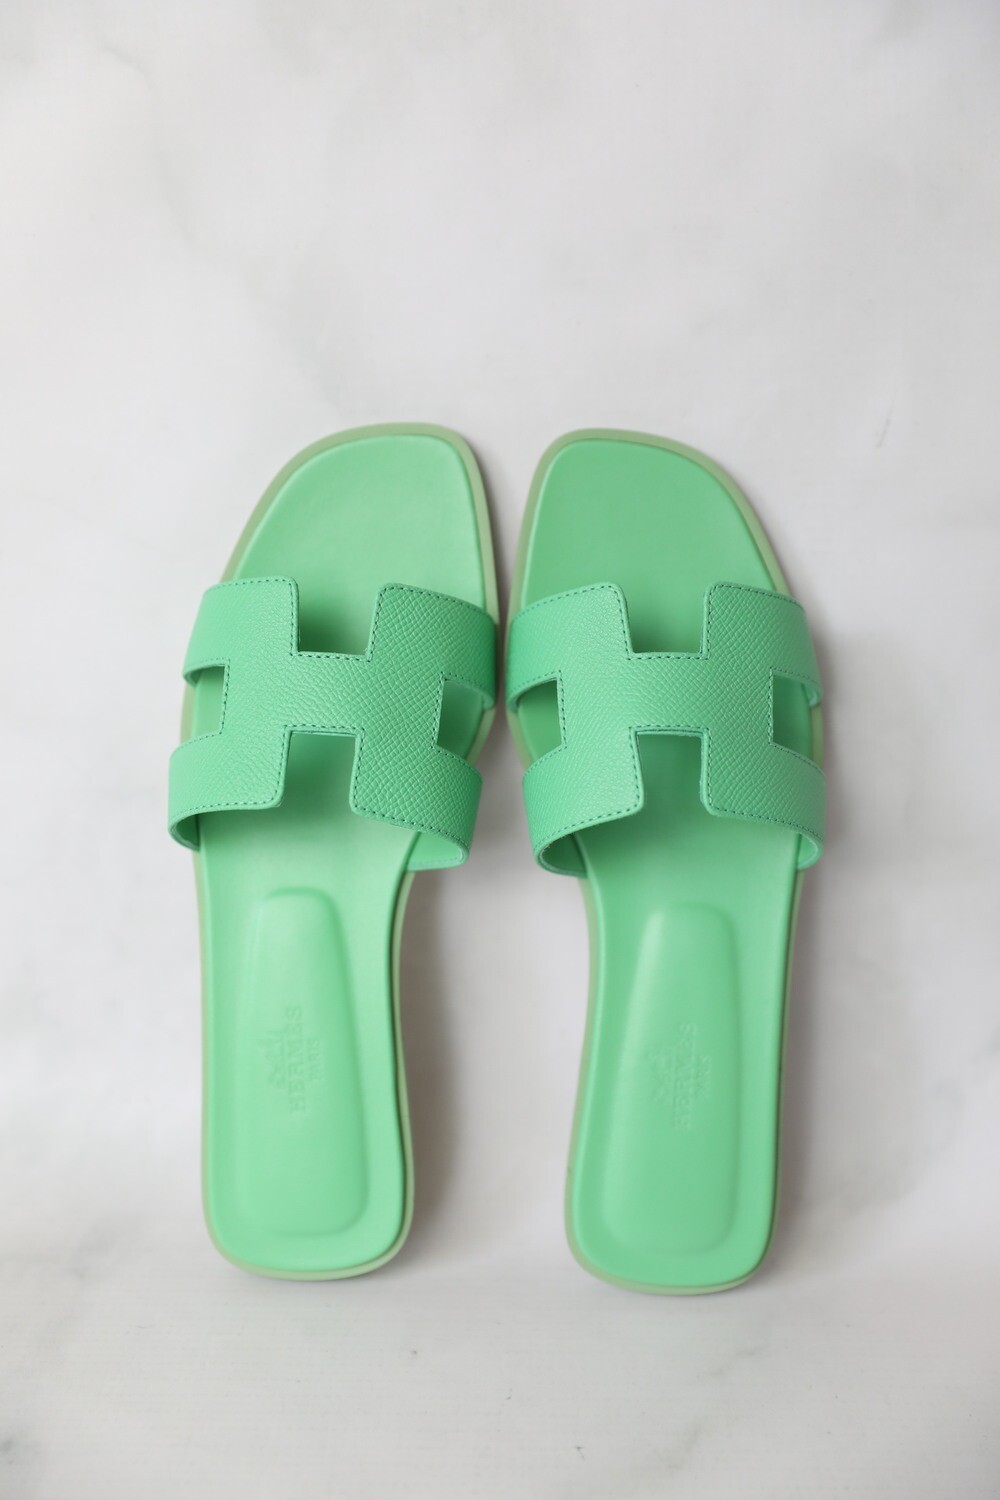 Hermes Oran Sandals Flat, Green, Size 39.5, New in Box WA001